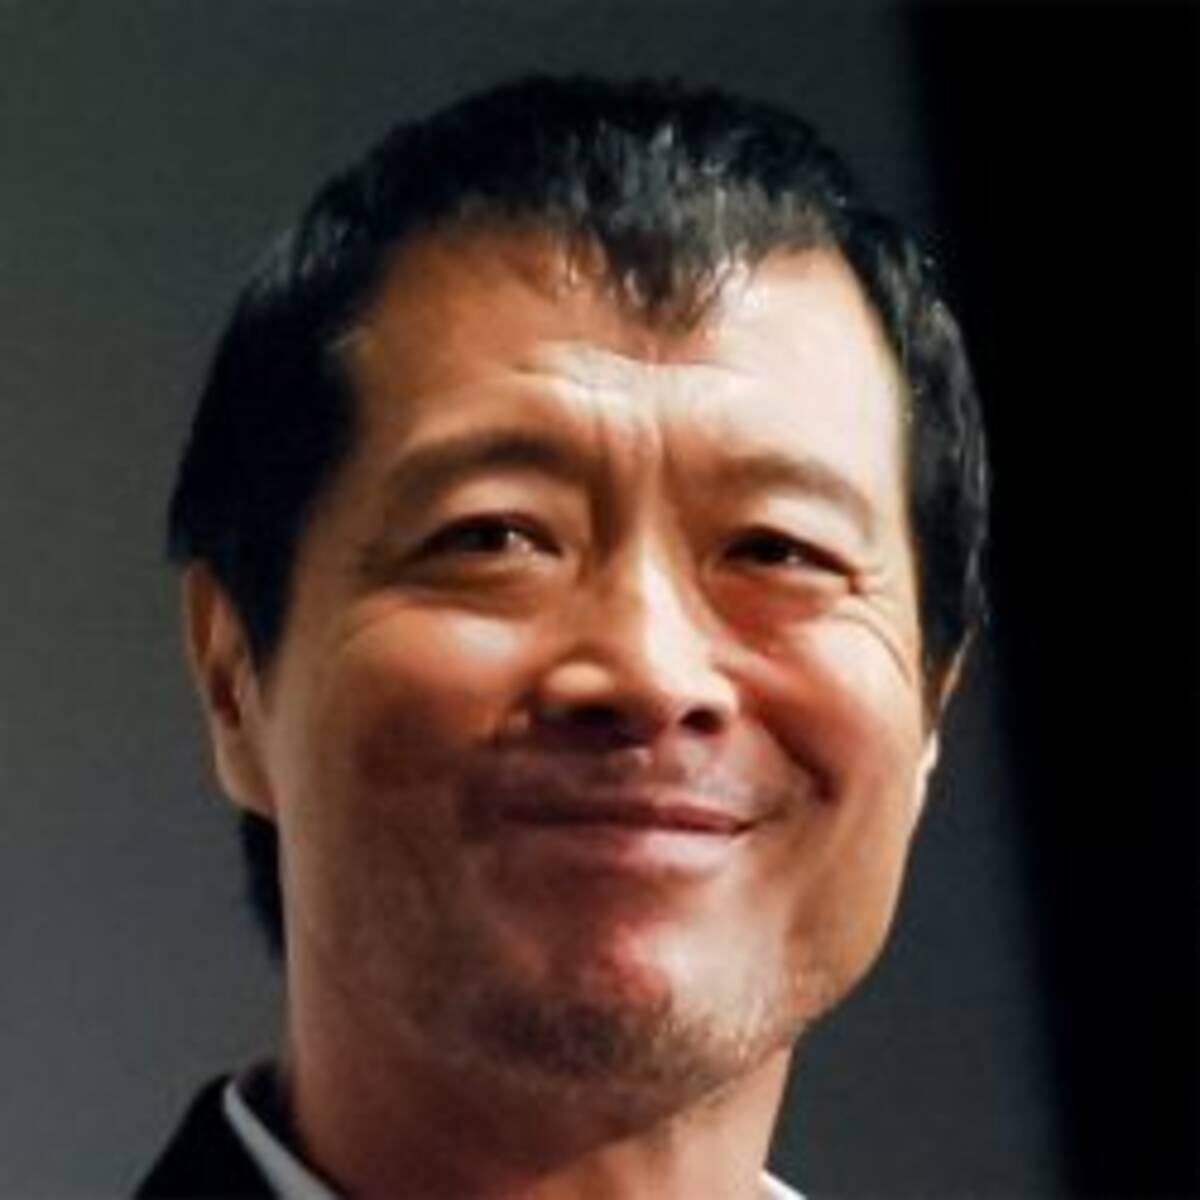 矢沢永吉が 10年前の自分の姿 を見て言い放った 常識外のひと言 22年5月28日 エキサイトニュース